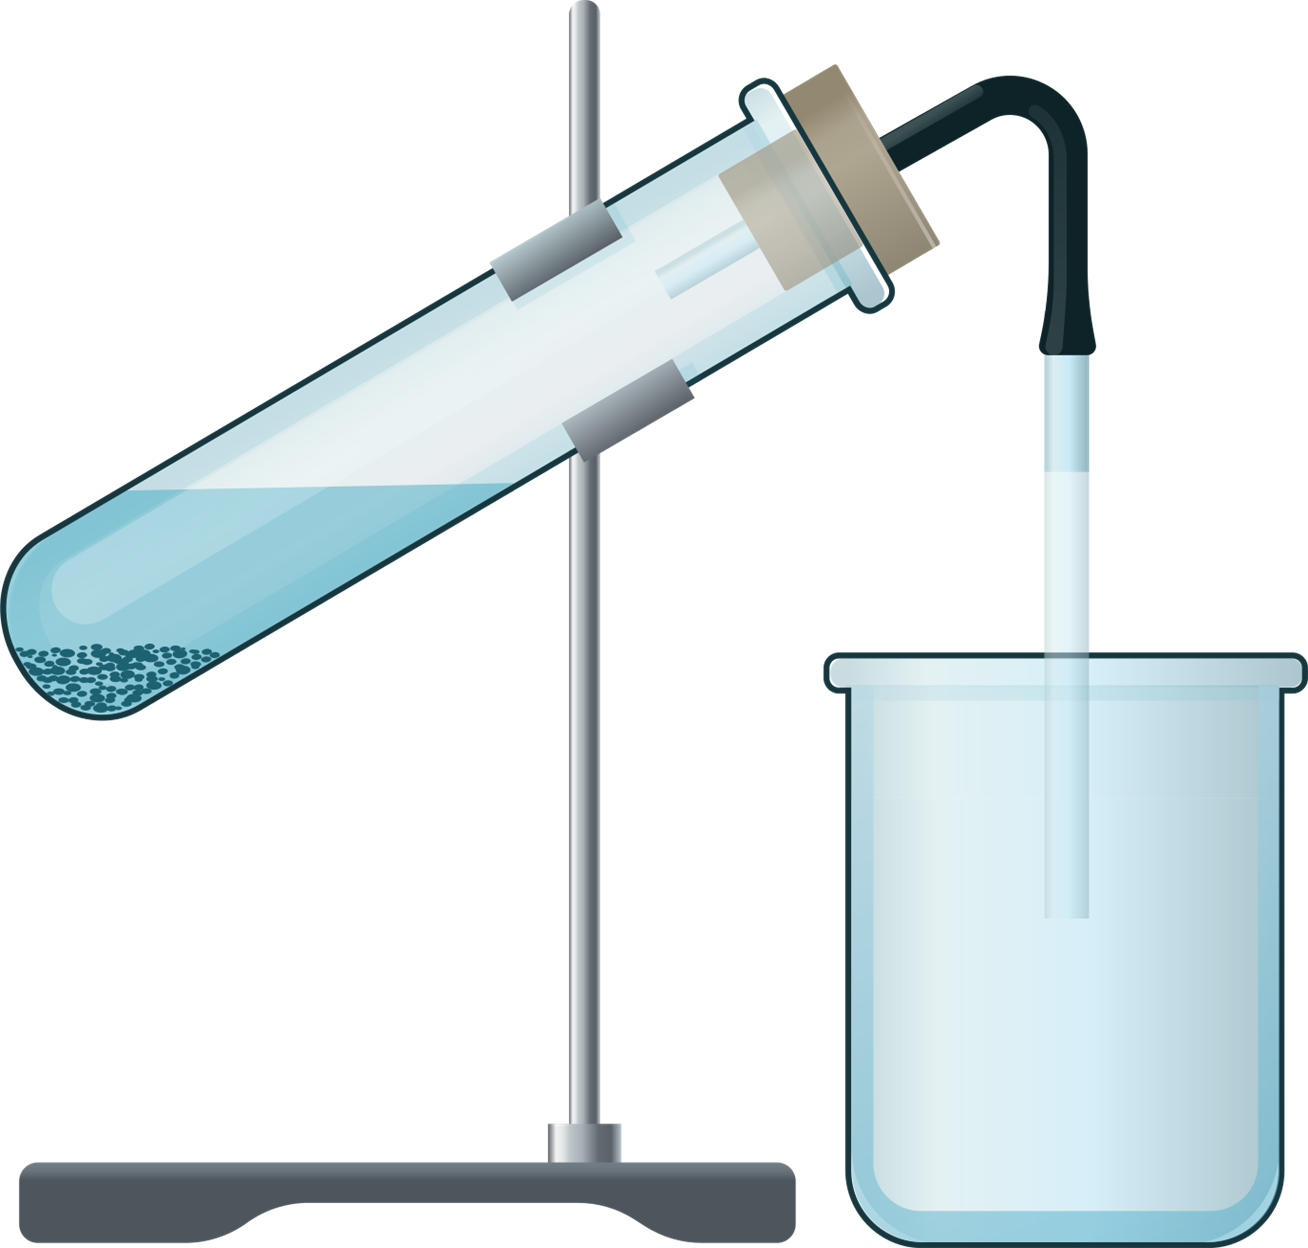 Какой газ можно собирать вытеснением воды. Прибор для собирания газов в лаборатории. Собирание газов методом вытеснения воздуха. Прибор для вытеснения кислорода. Методы сбора газов в лаборатории.